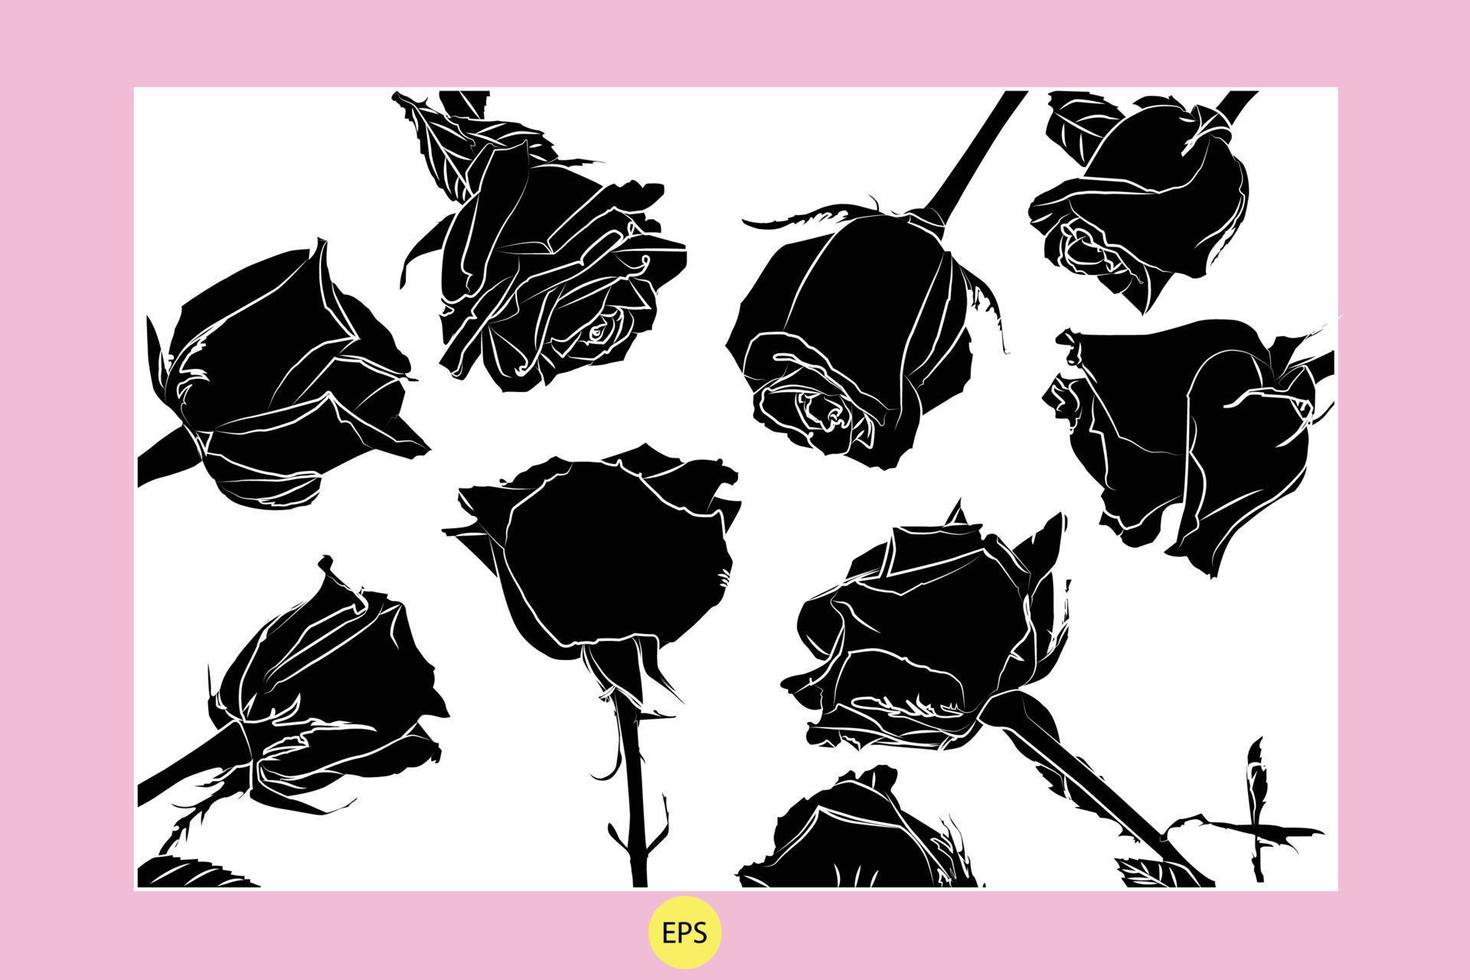 conjunto de siluetas de rosas decorativas negras, siluetas negras vectoriales de flores aisladas en un fondo blanco. vector